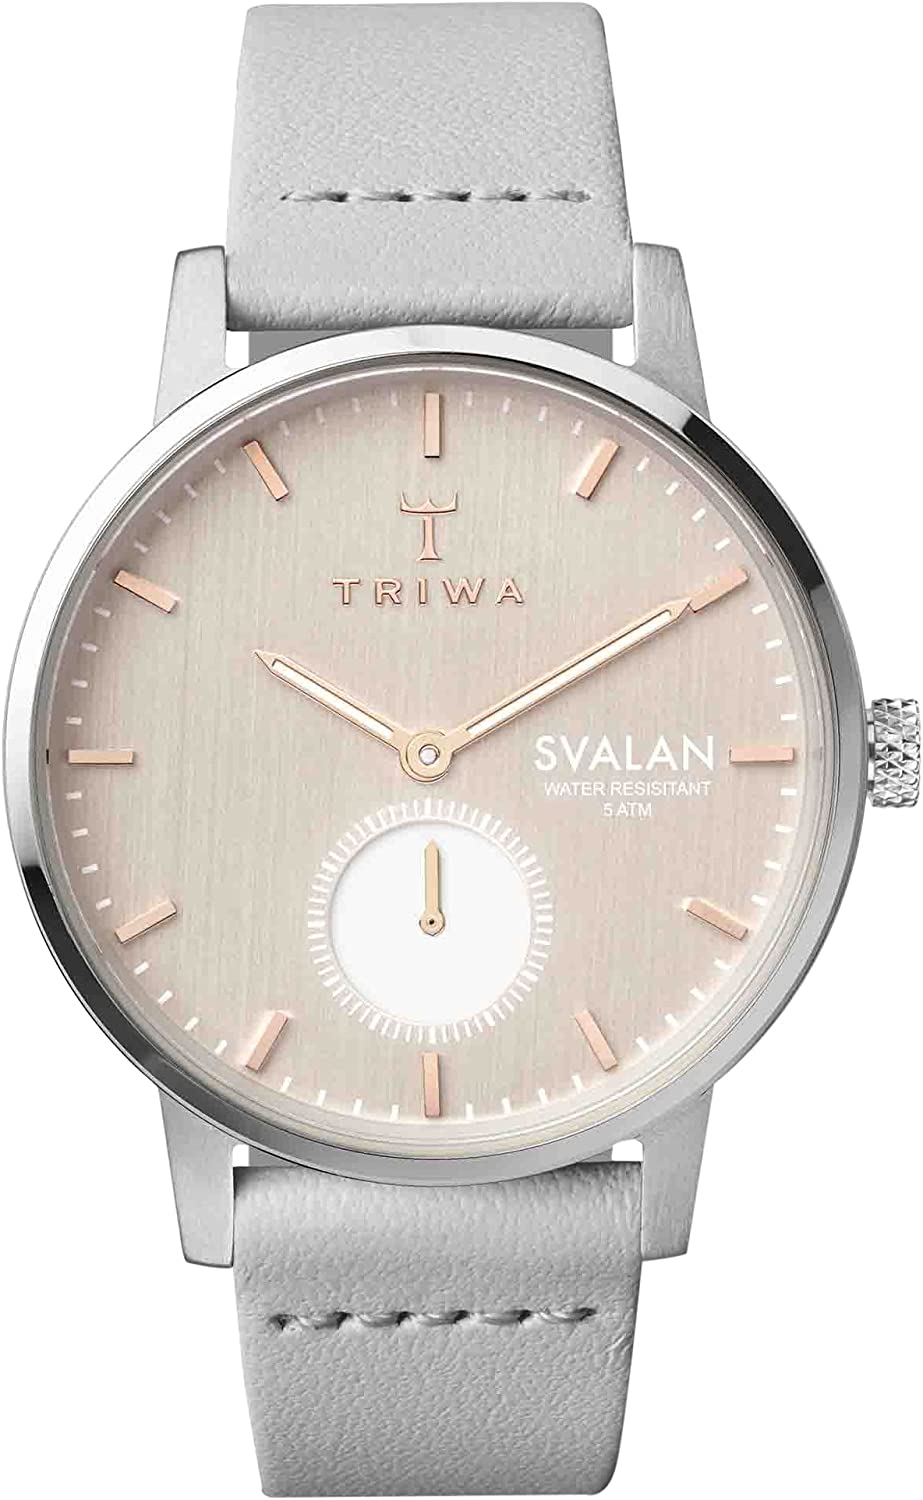 トリワ ビジネス腕時計 レディース トリワ 腕時計 レディース シルバー ローズゴールド TRIWA SVST102-SS111512 スバーラン SVALAN ブランド